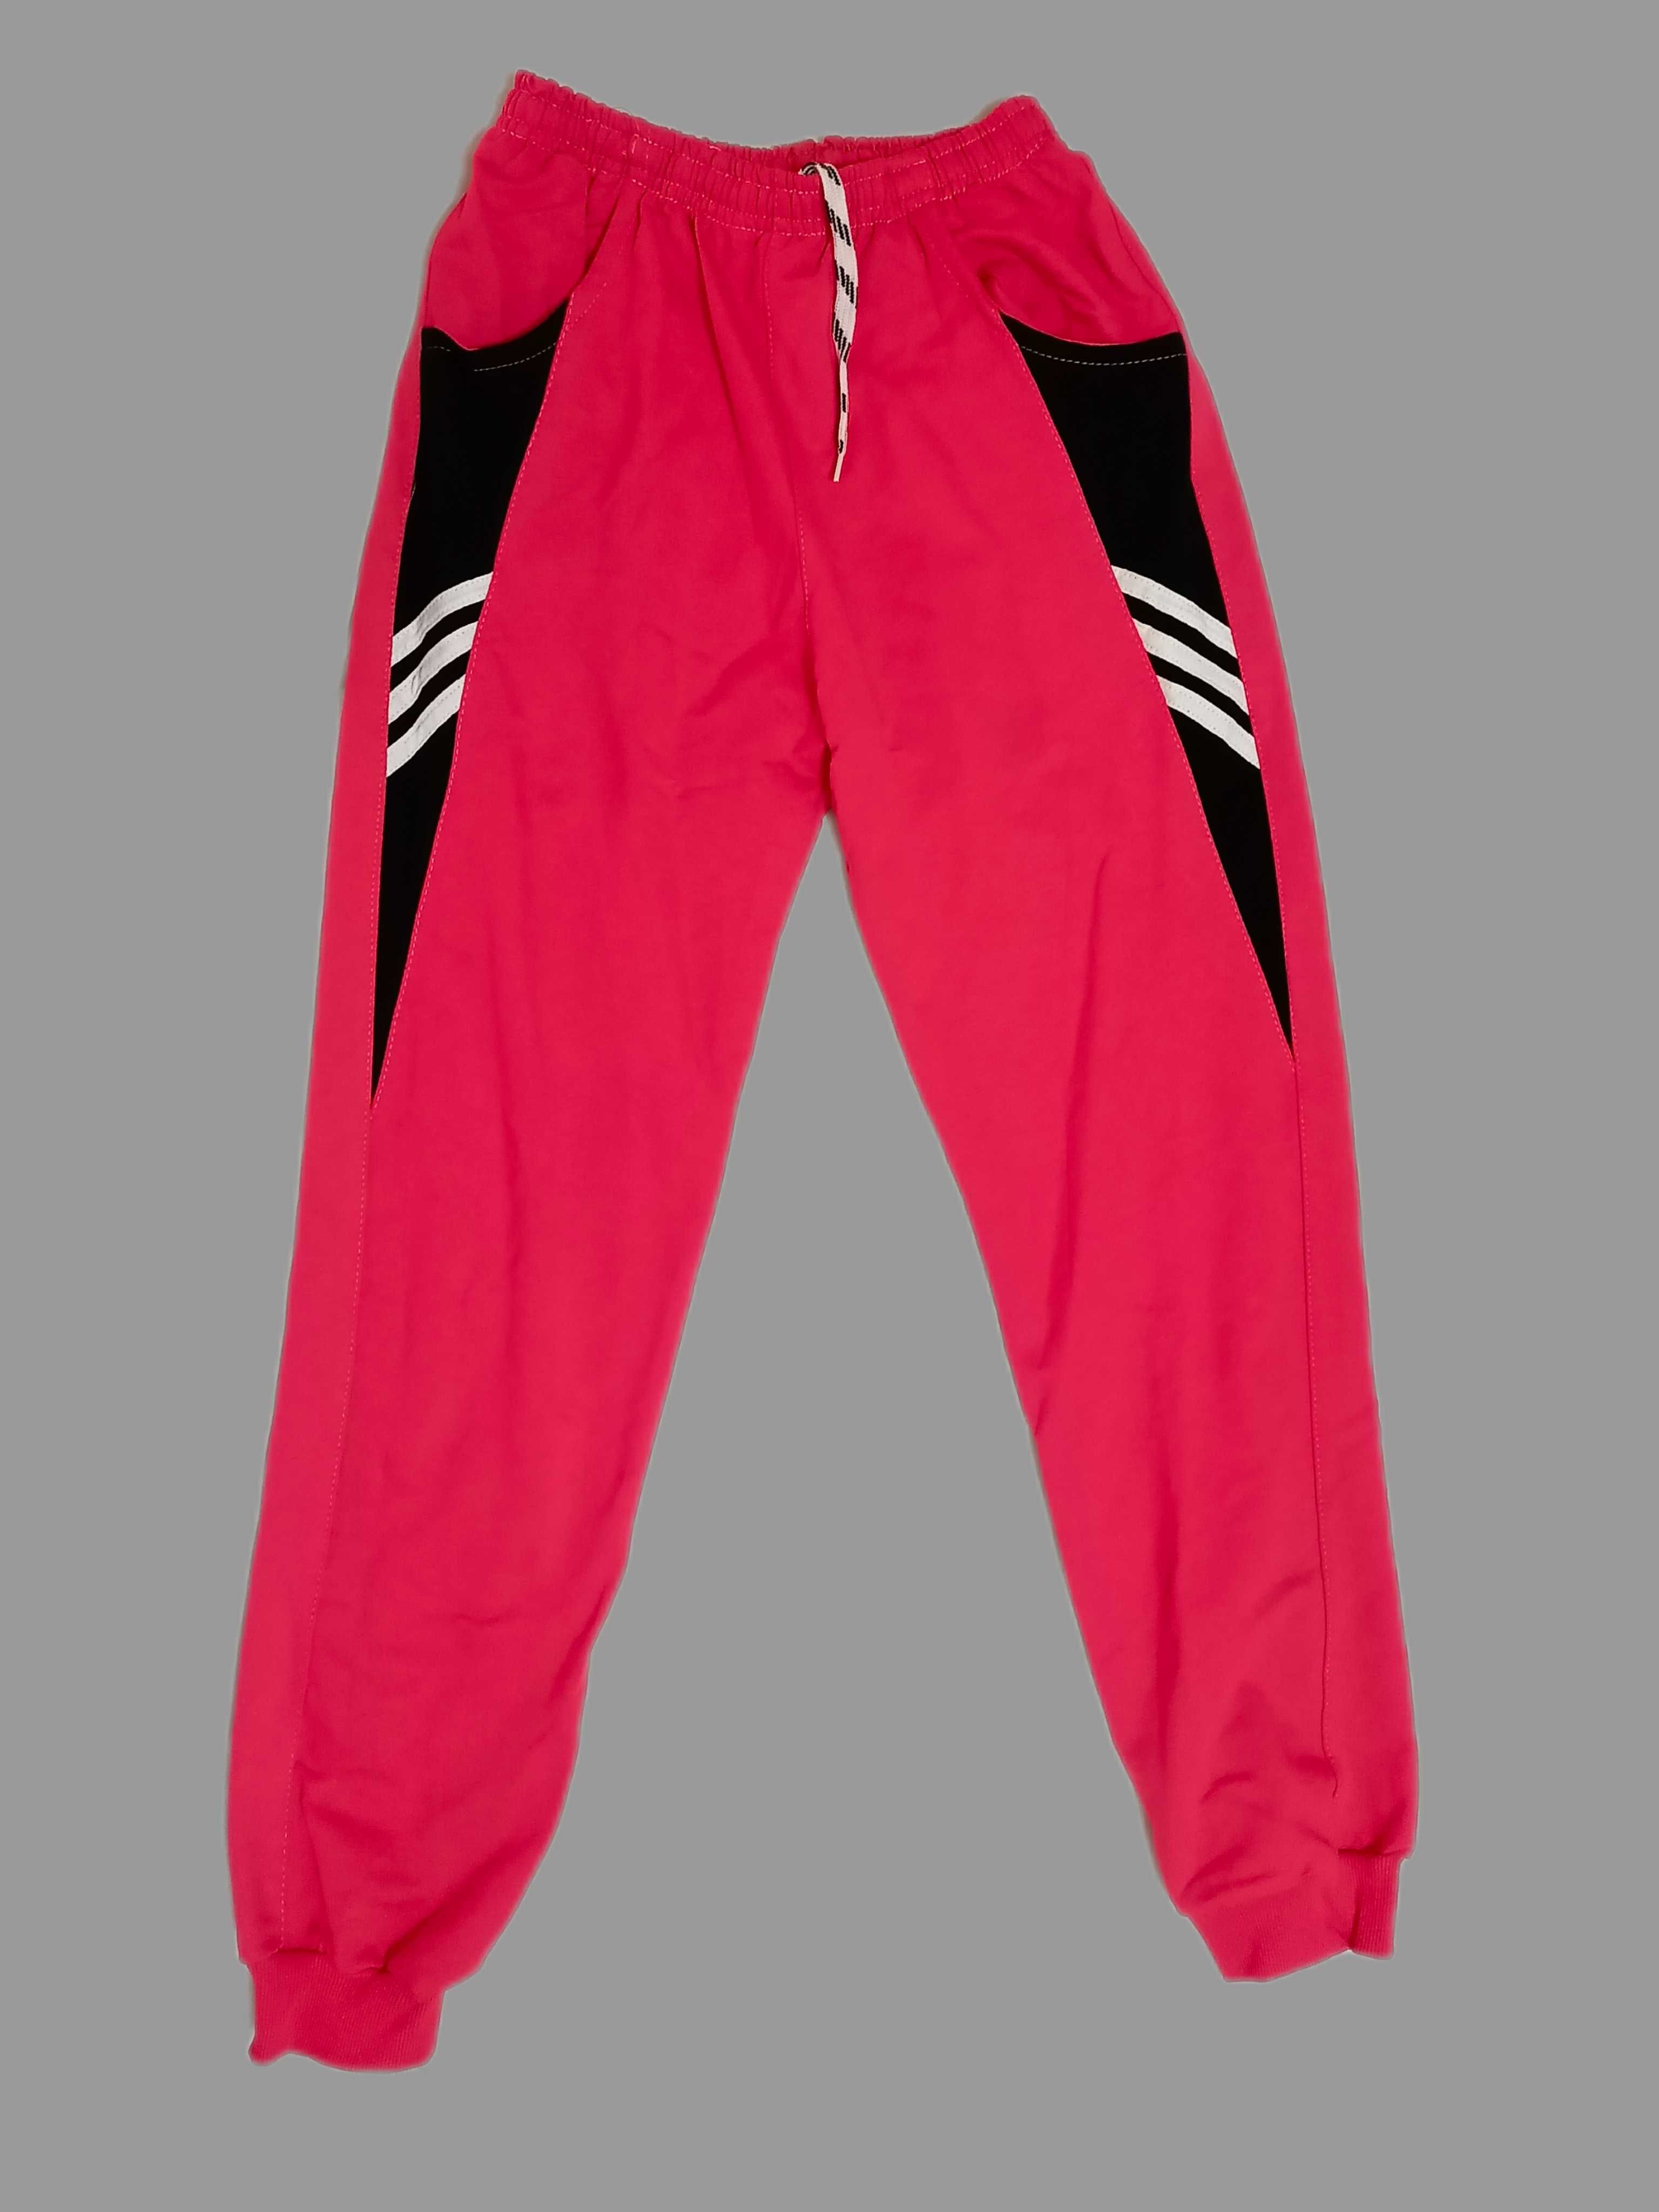 Стильний спортивний костюм "Бризк Енергії" для дівчинки 12-14 років.